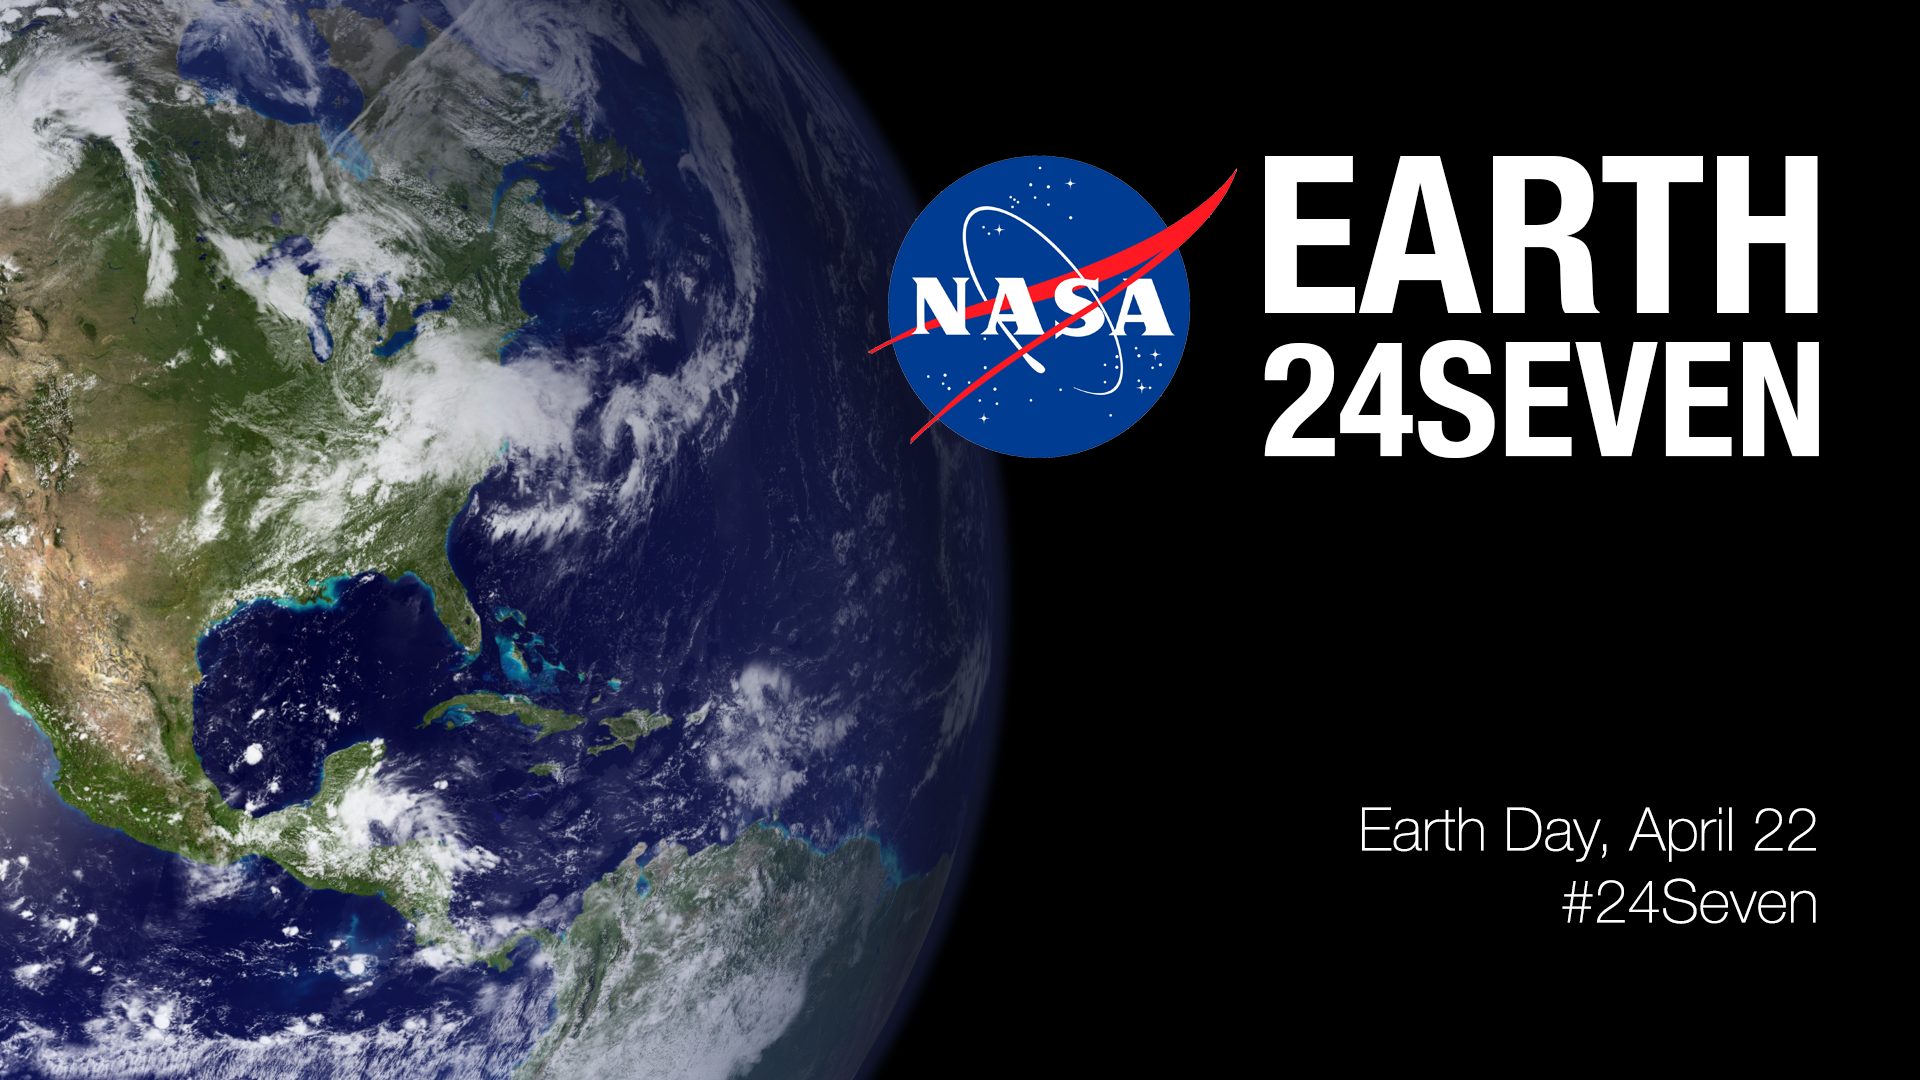 earth space nasa logo